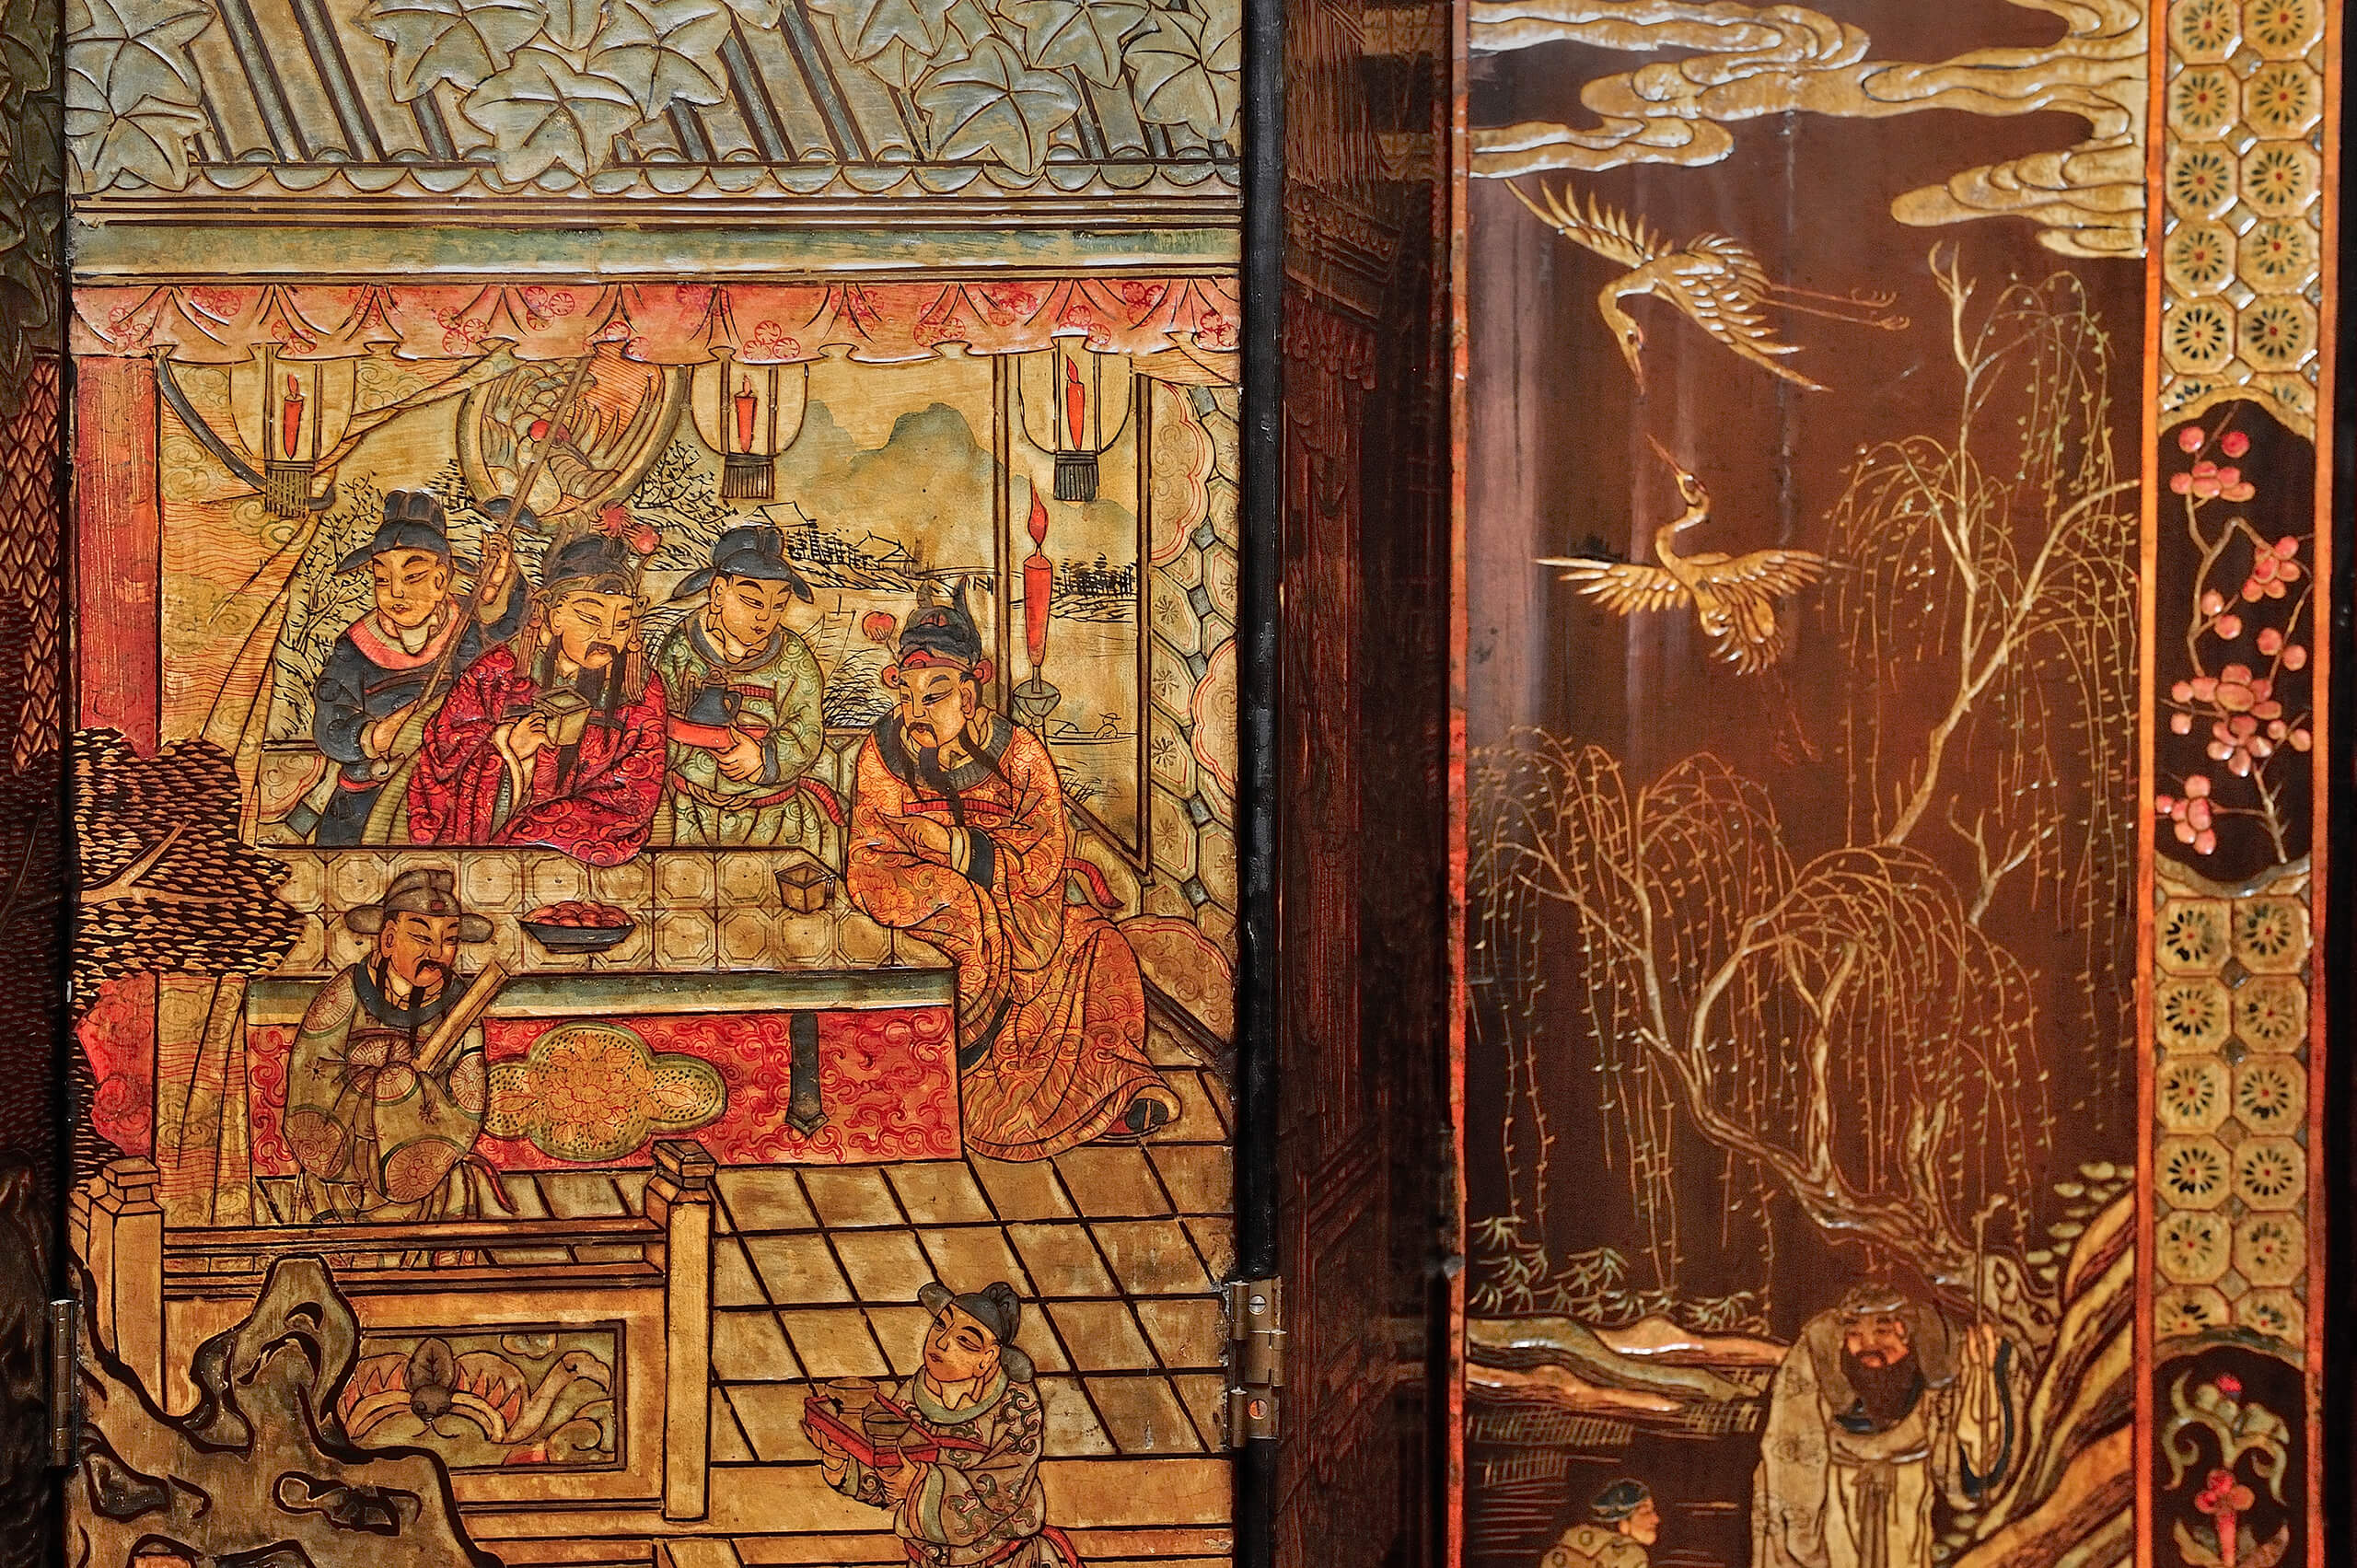 Biombo de ocho hojas de madera laqueada con escenas palaciegas | Salas de Arte Virreinal y Siglo XIX | Museo Amparo, Puebla